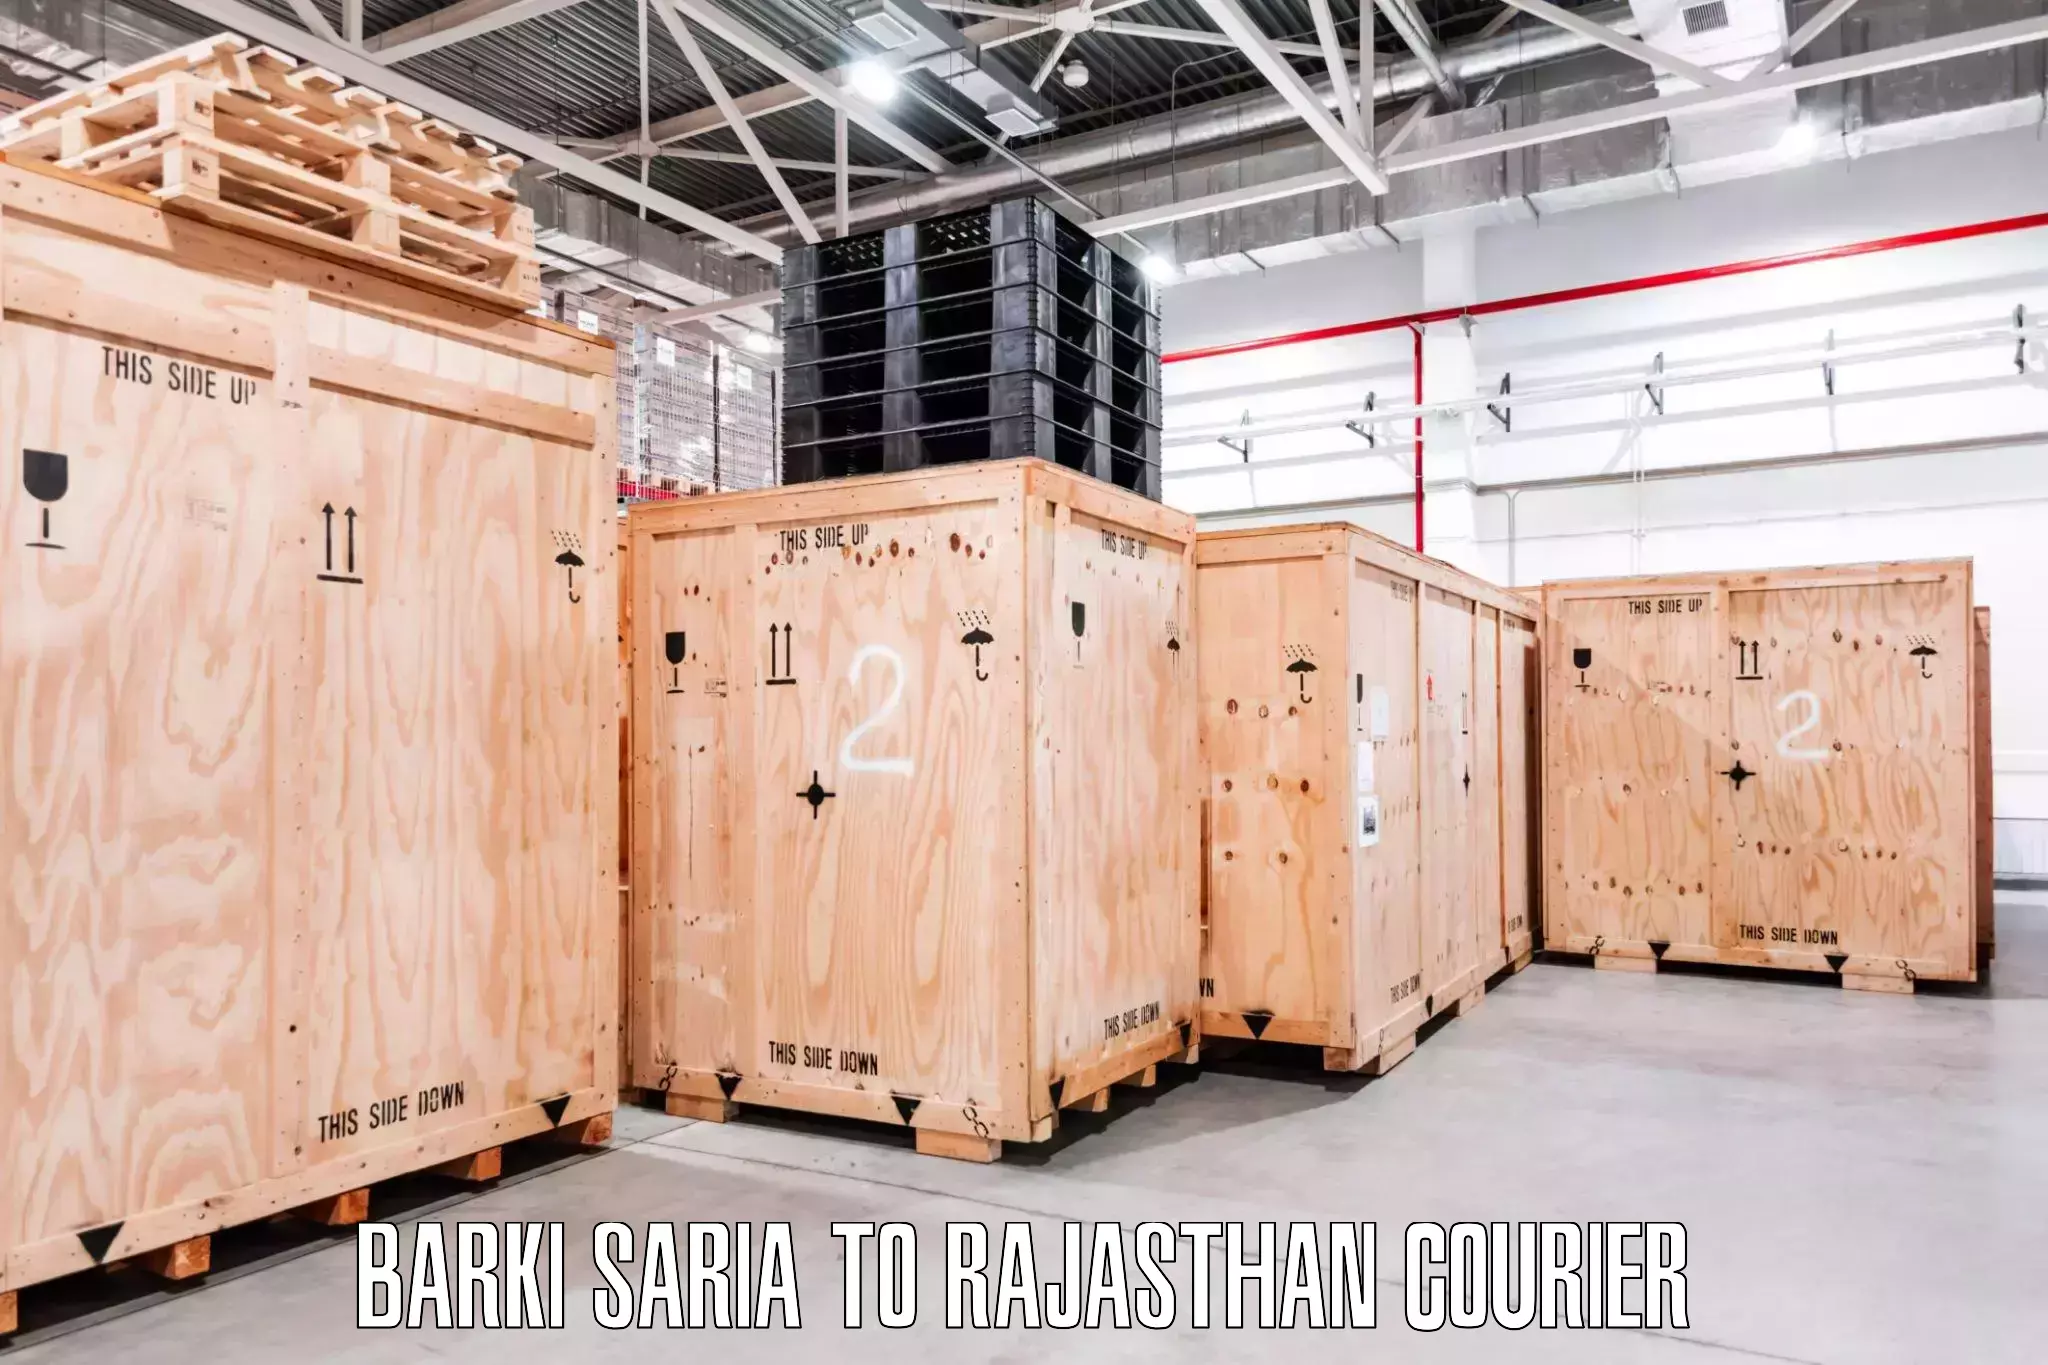 Home moving experts Barki Saria to Raila